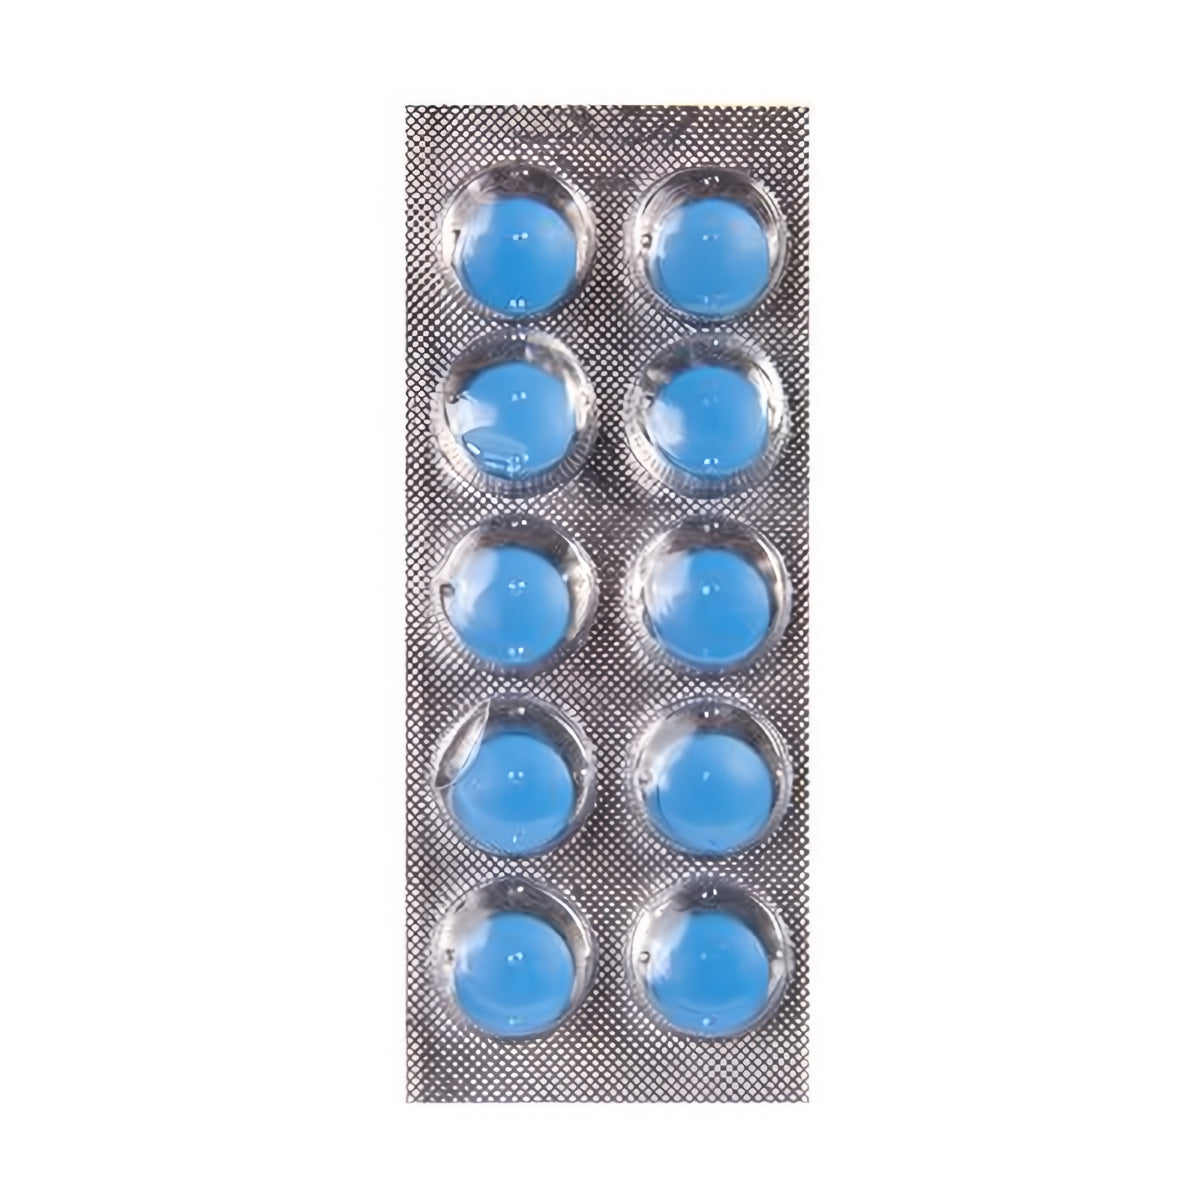 Diehard II Hardcore - Stimulating Capsules - 10 Pieces - EroticToyzProducten,Veilige Seks, Verzorging Hulp,Stimulerende Middelen,Pillen en Supplementen,,MannelijkPharmquests by Shots